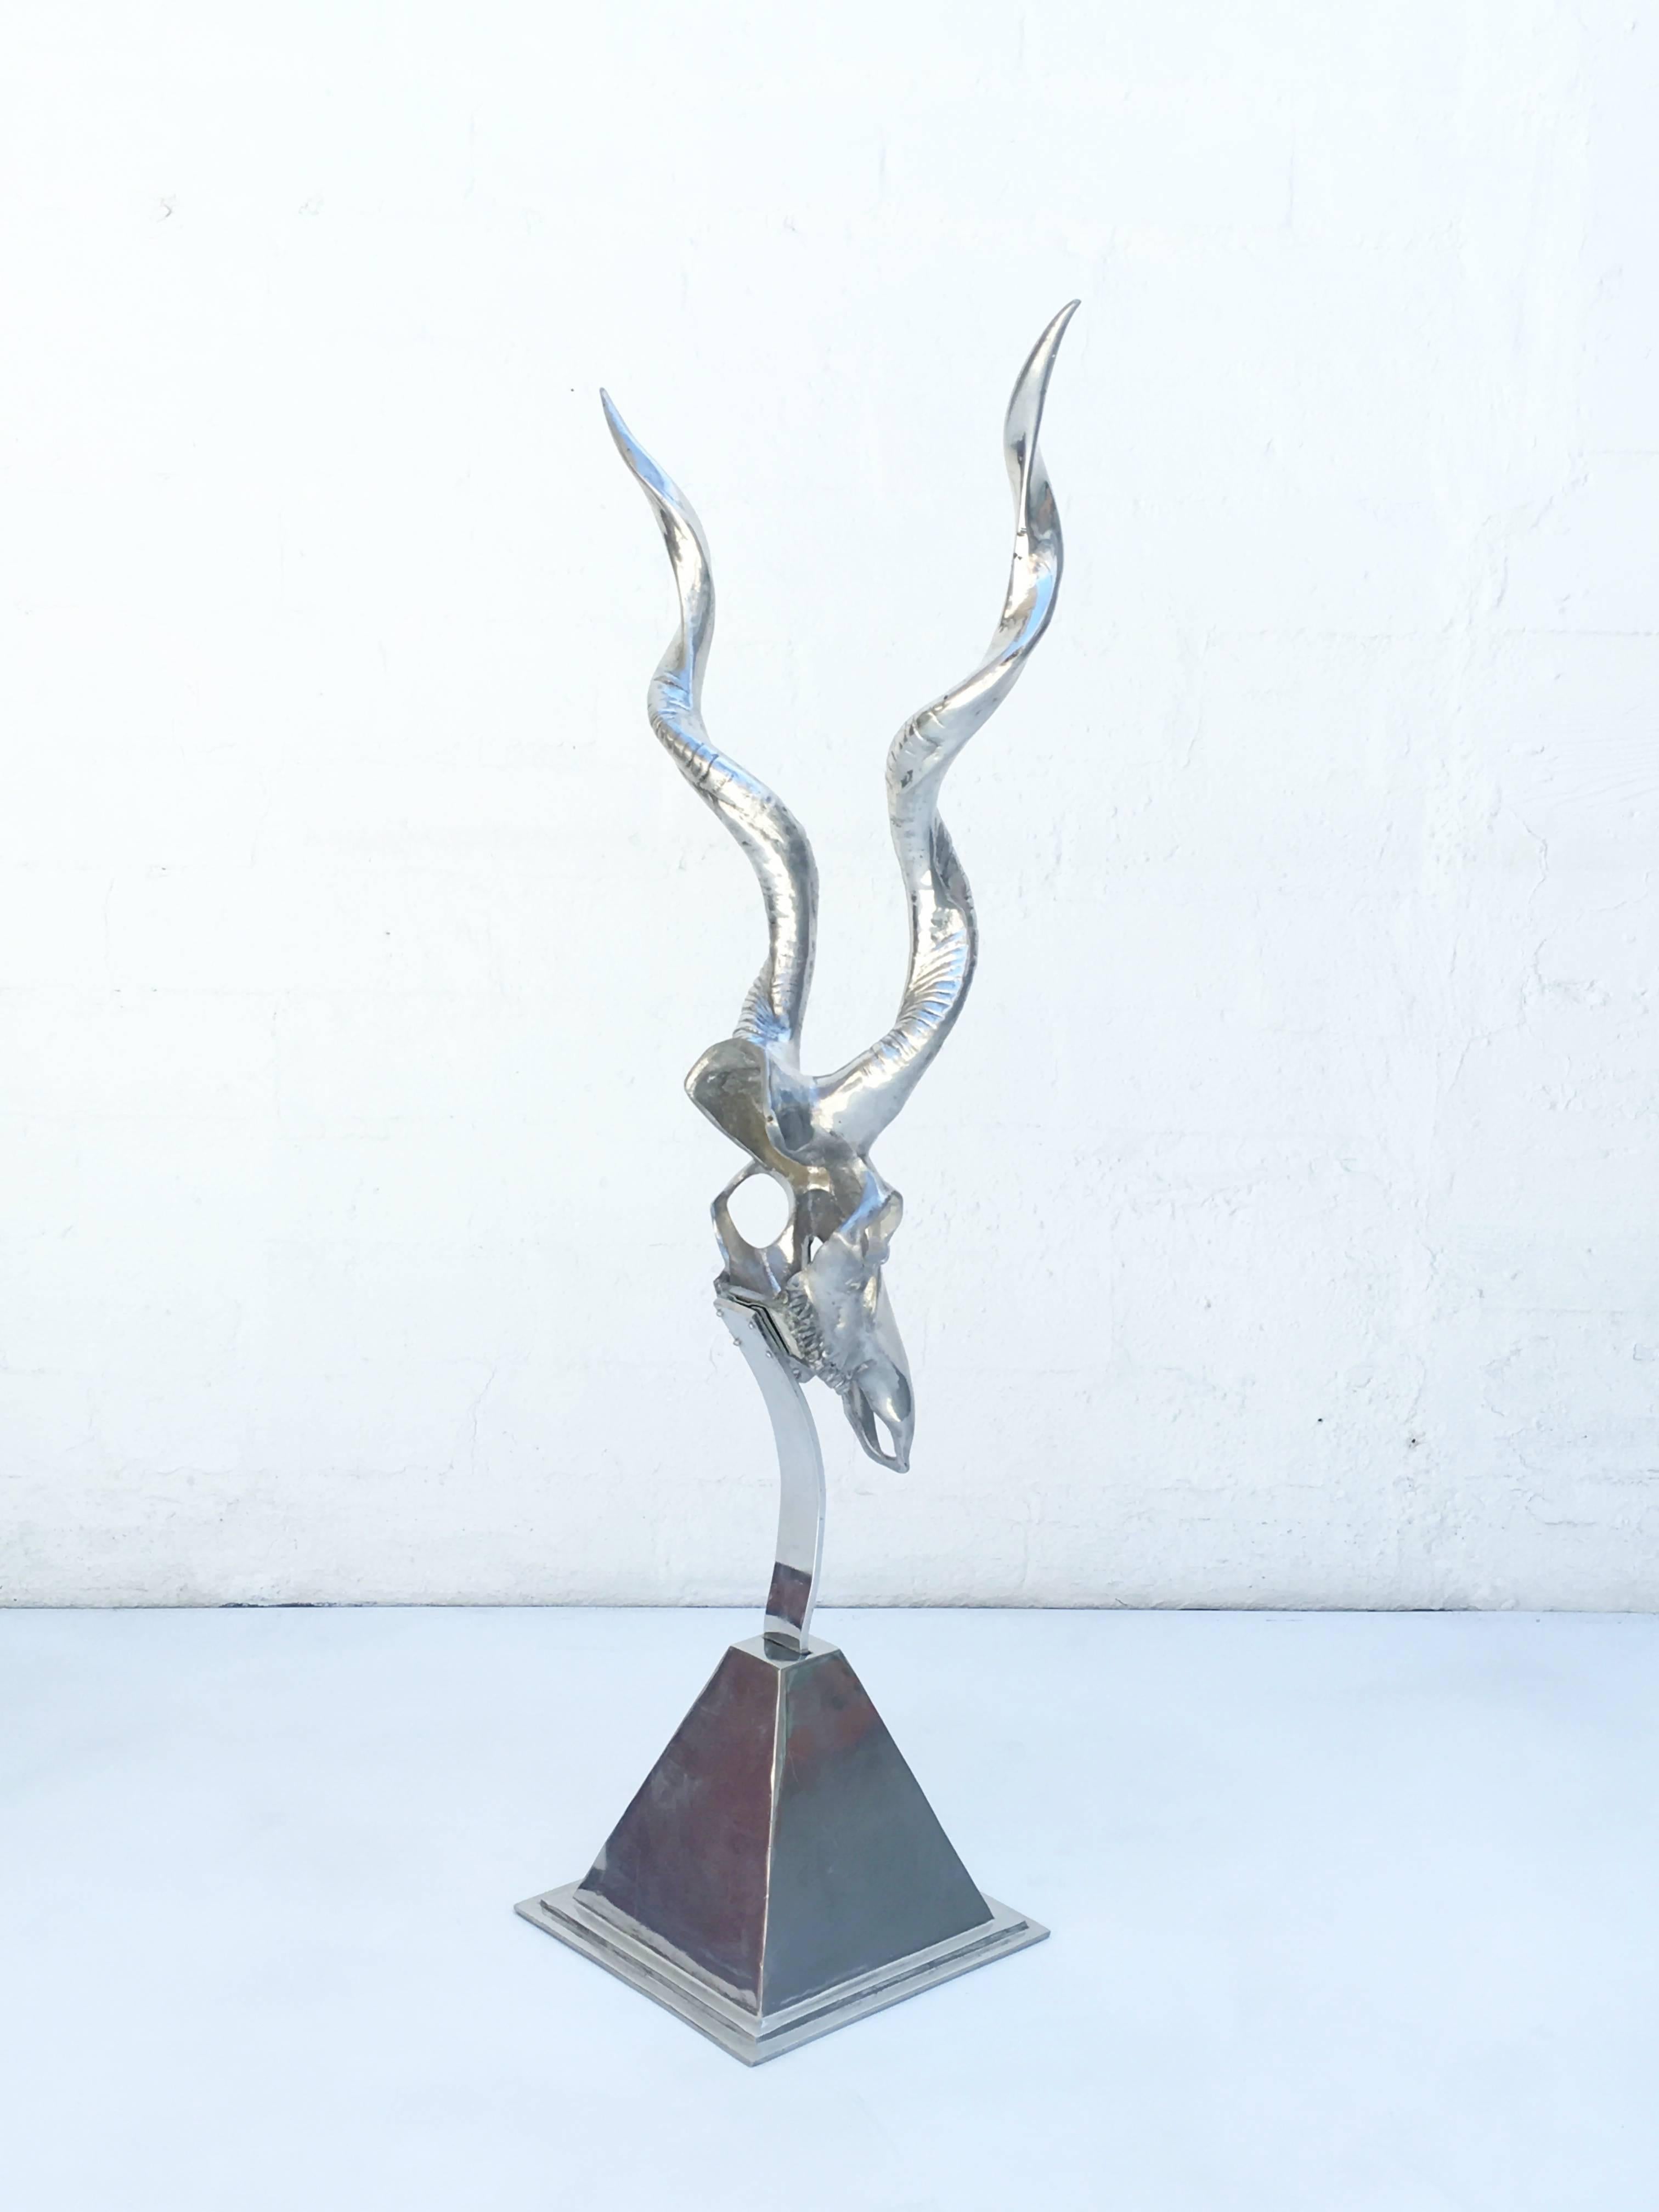 Polished Aluminum Sculpture by Arthur Court 1